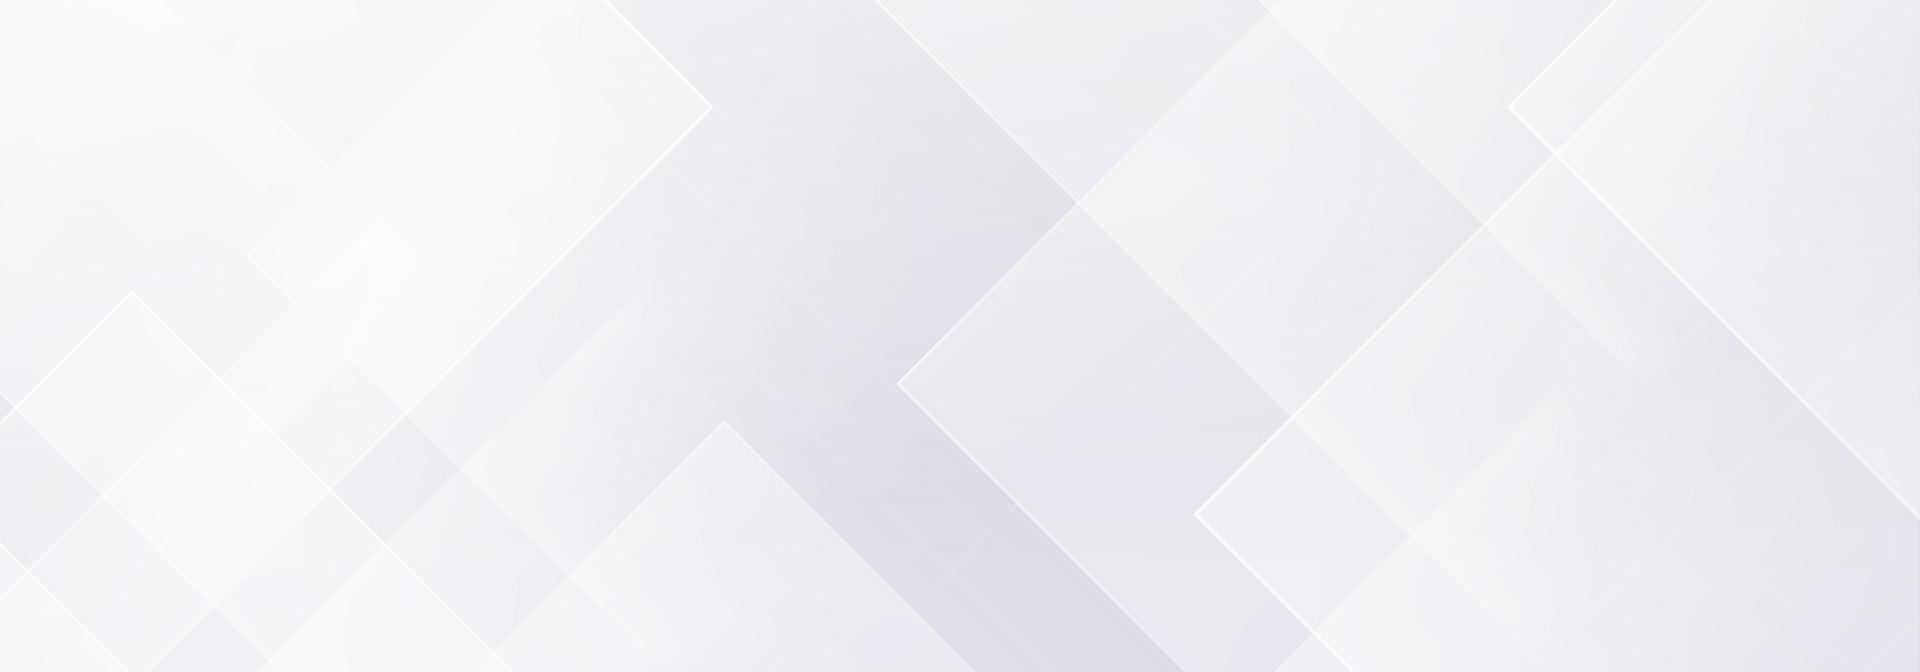 abstracto geométrico blanco y gris sobre fondo degradado plateado claro. diseño de pancartas modernas. ilustración vectorial vector